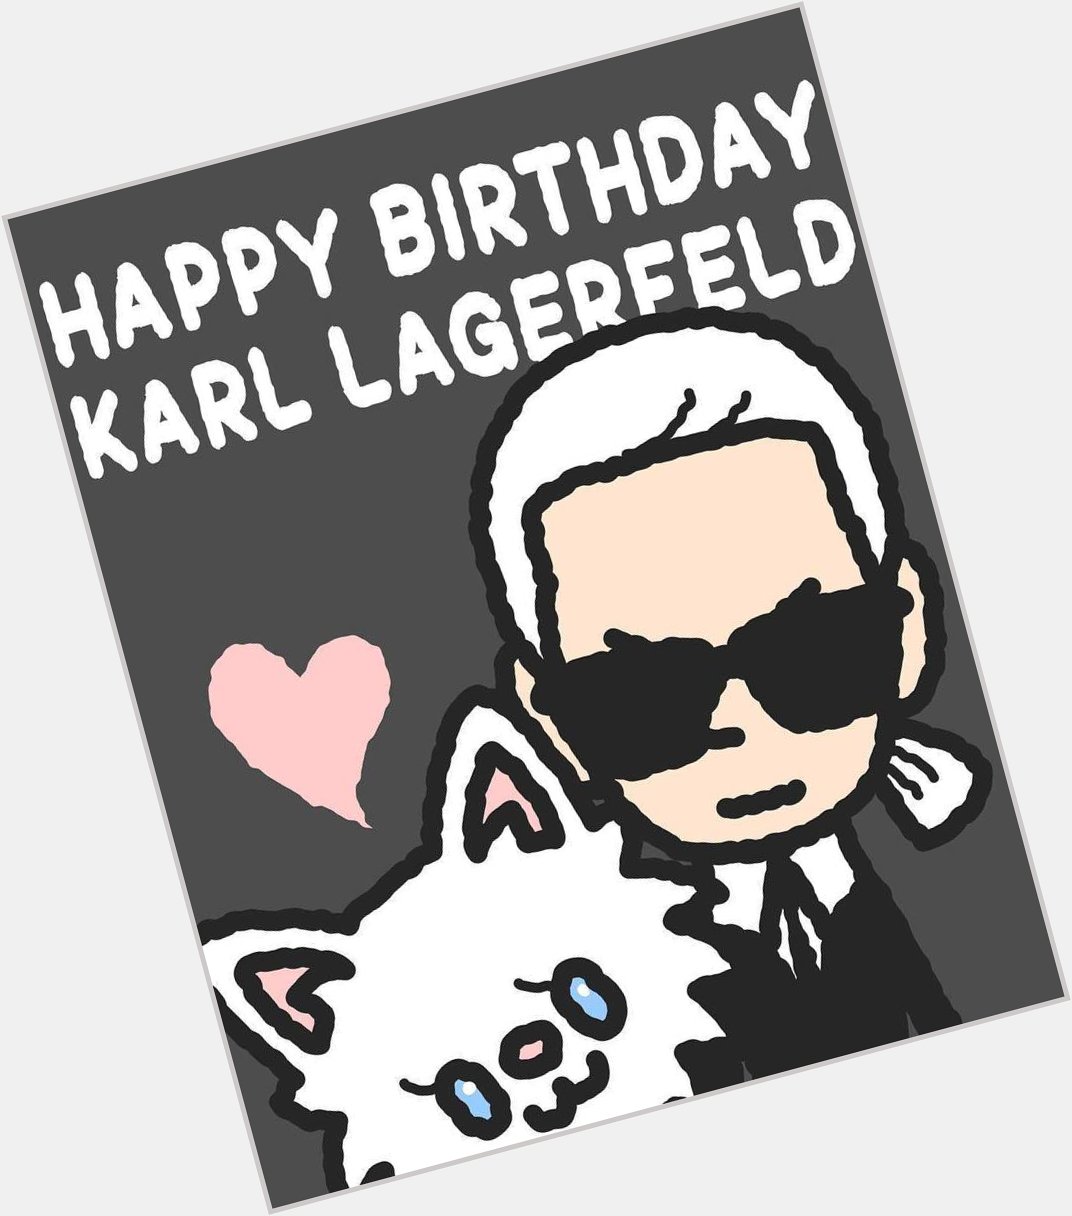                                                 . .:* Happy Birthday, Karl Lagerfeld  